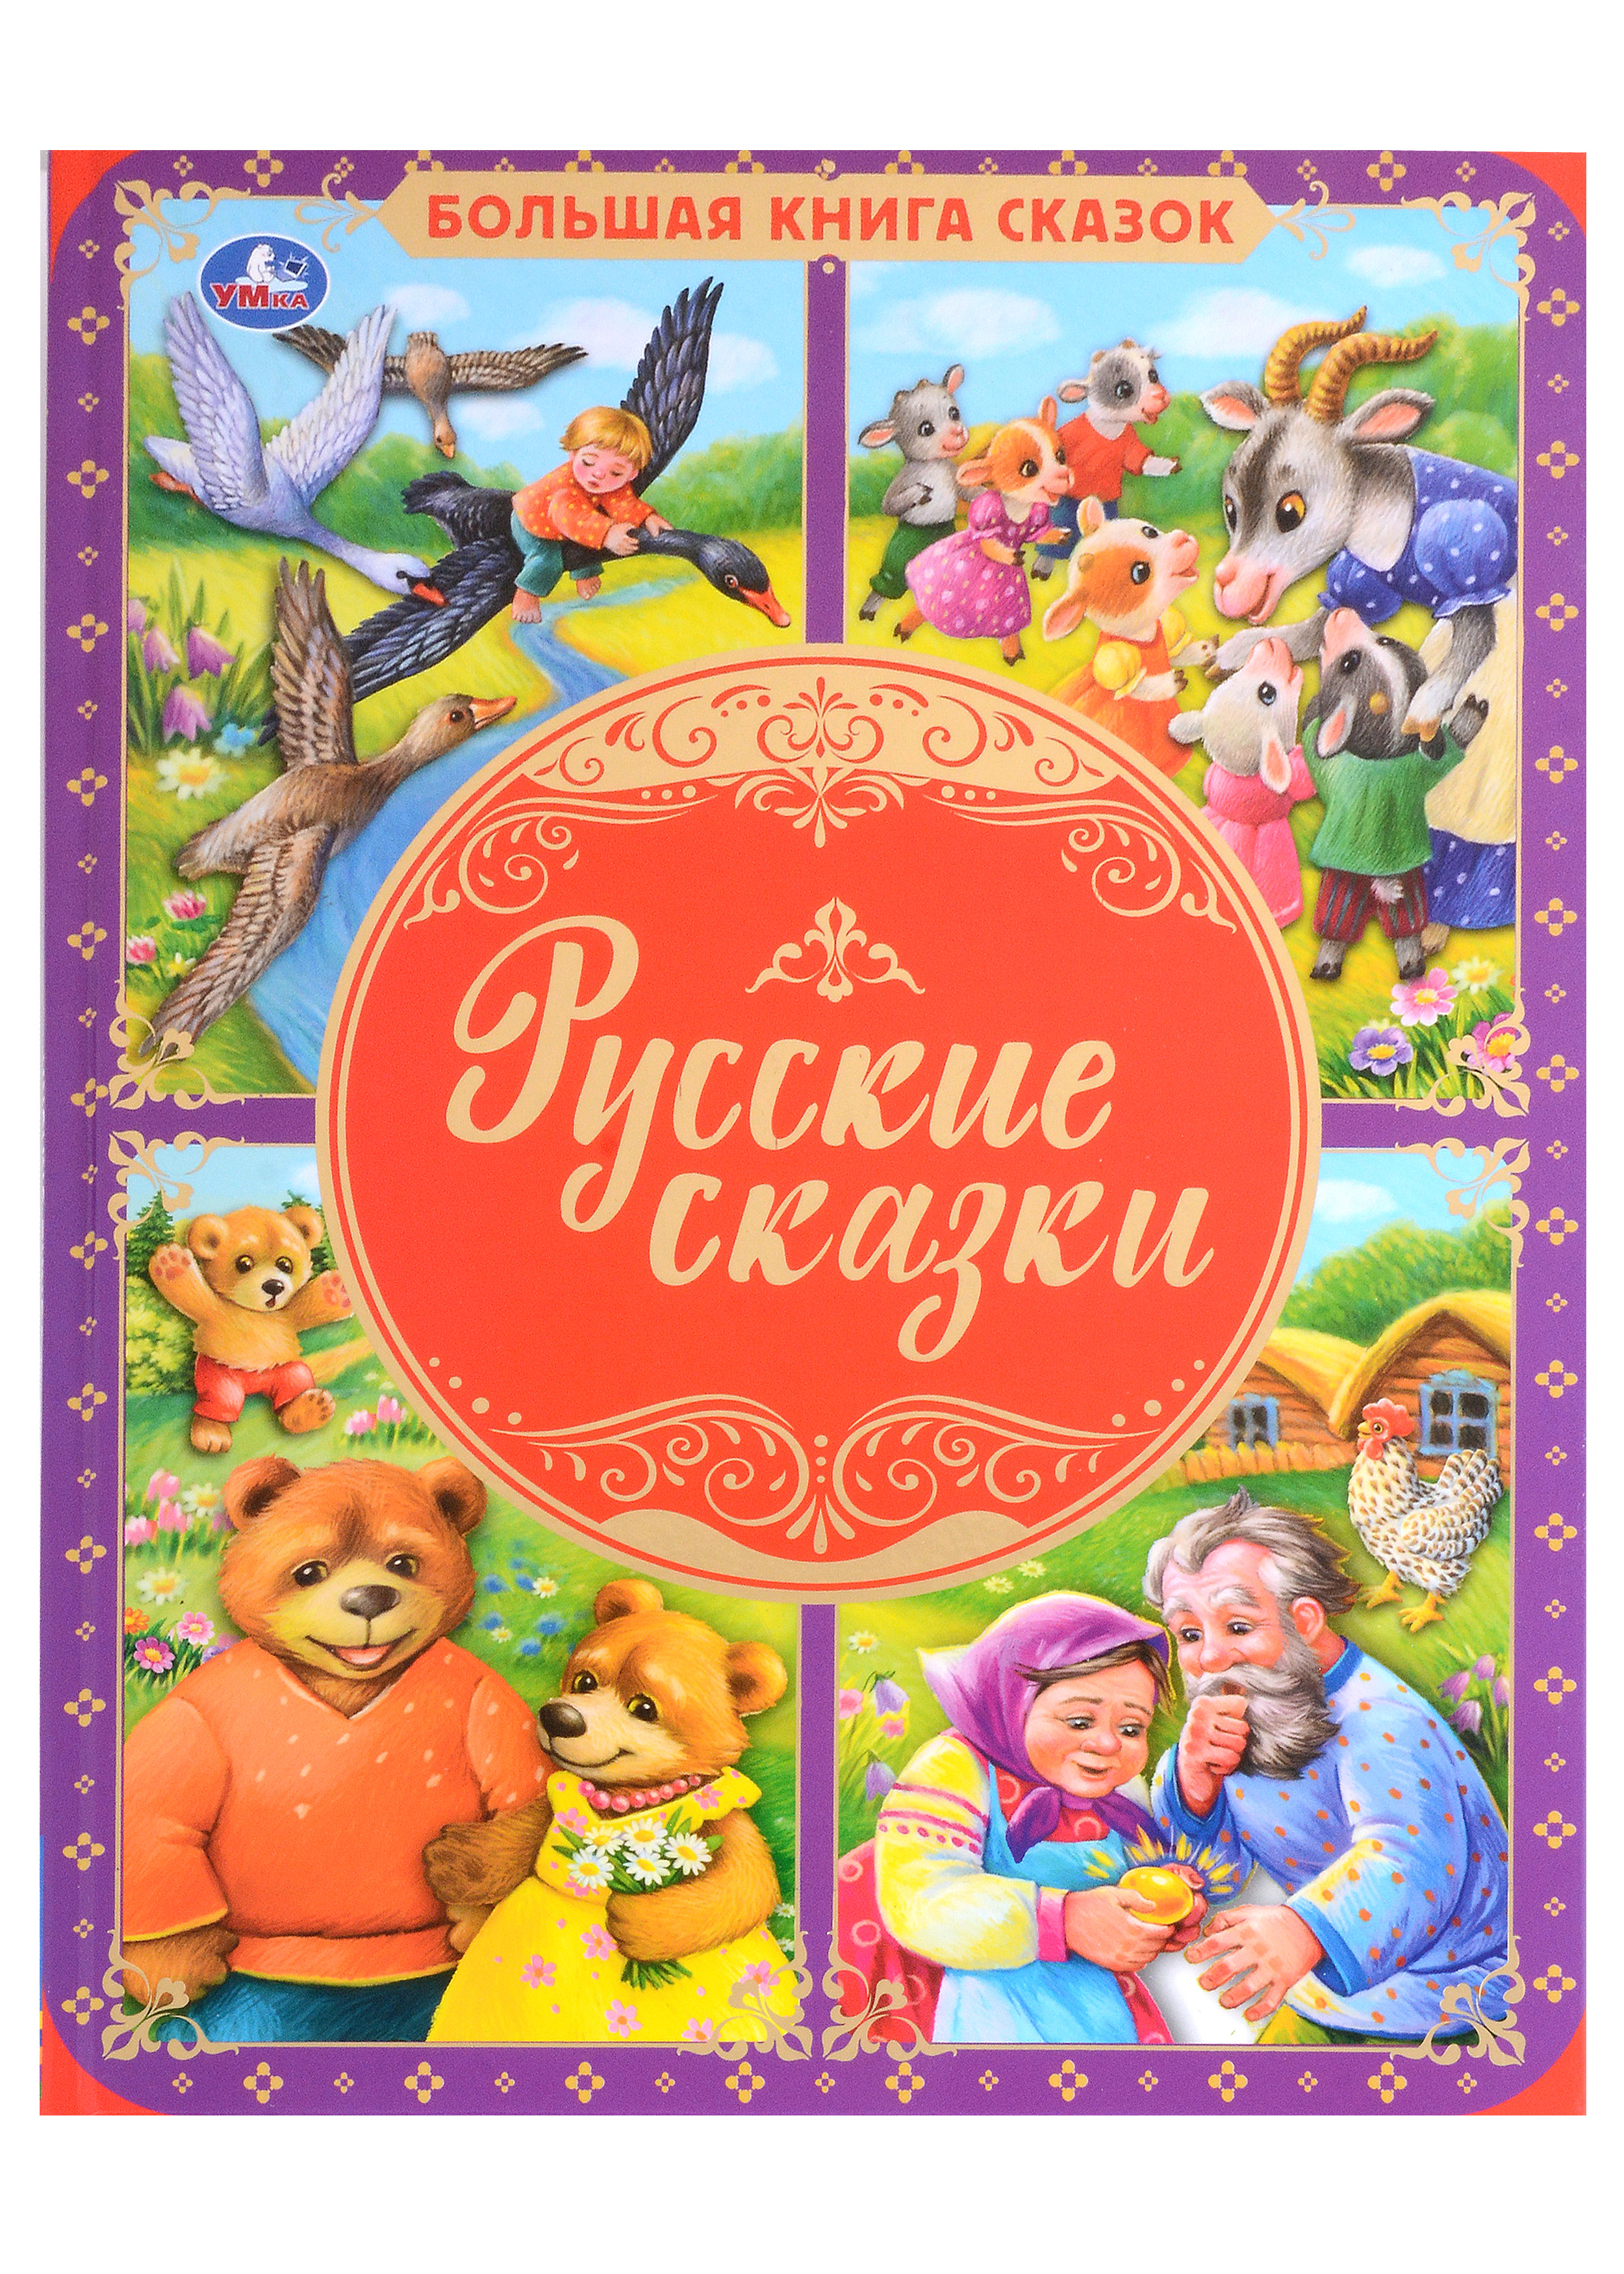 Русские сказки умка большая книга сказок сказки принцесс твердый переплет офсет а3 240х320мм в кор 14шт